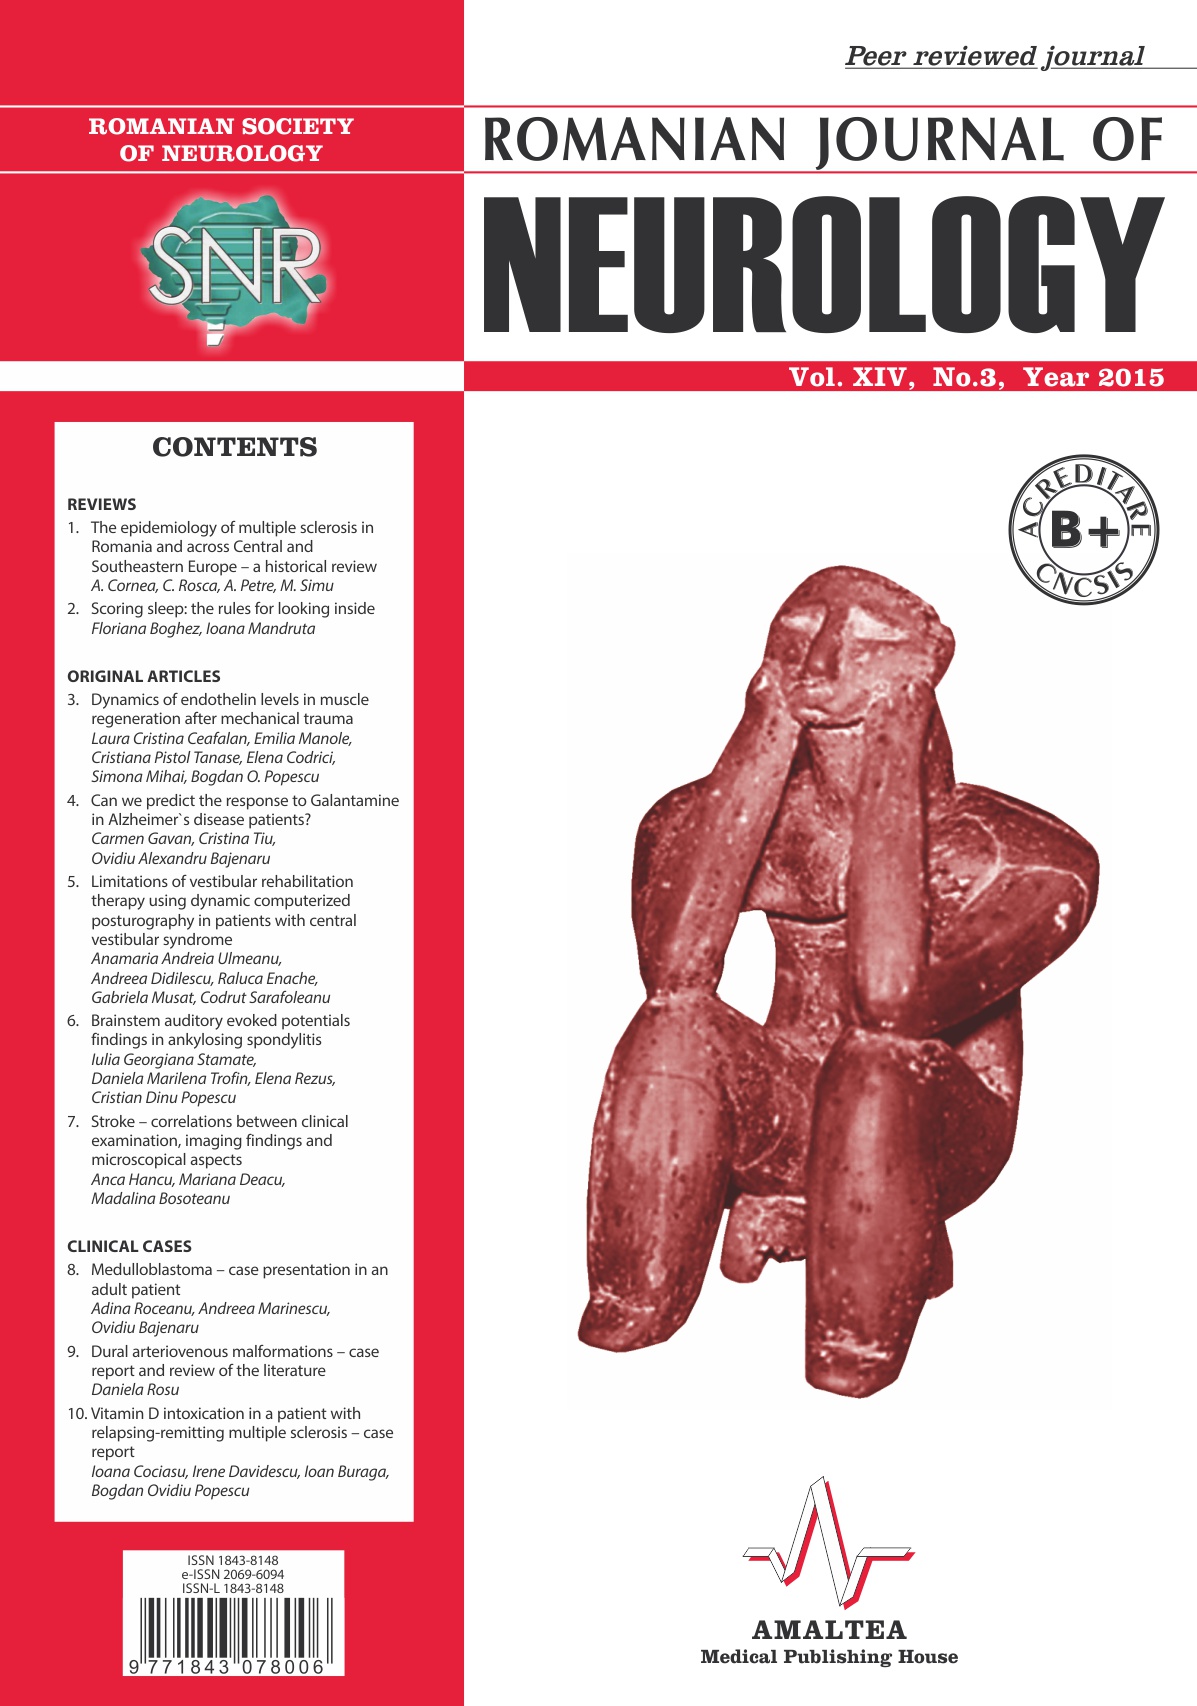 Romanian Journal of Neurology, Volume XIV, No. 3, 2015